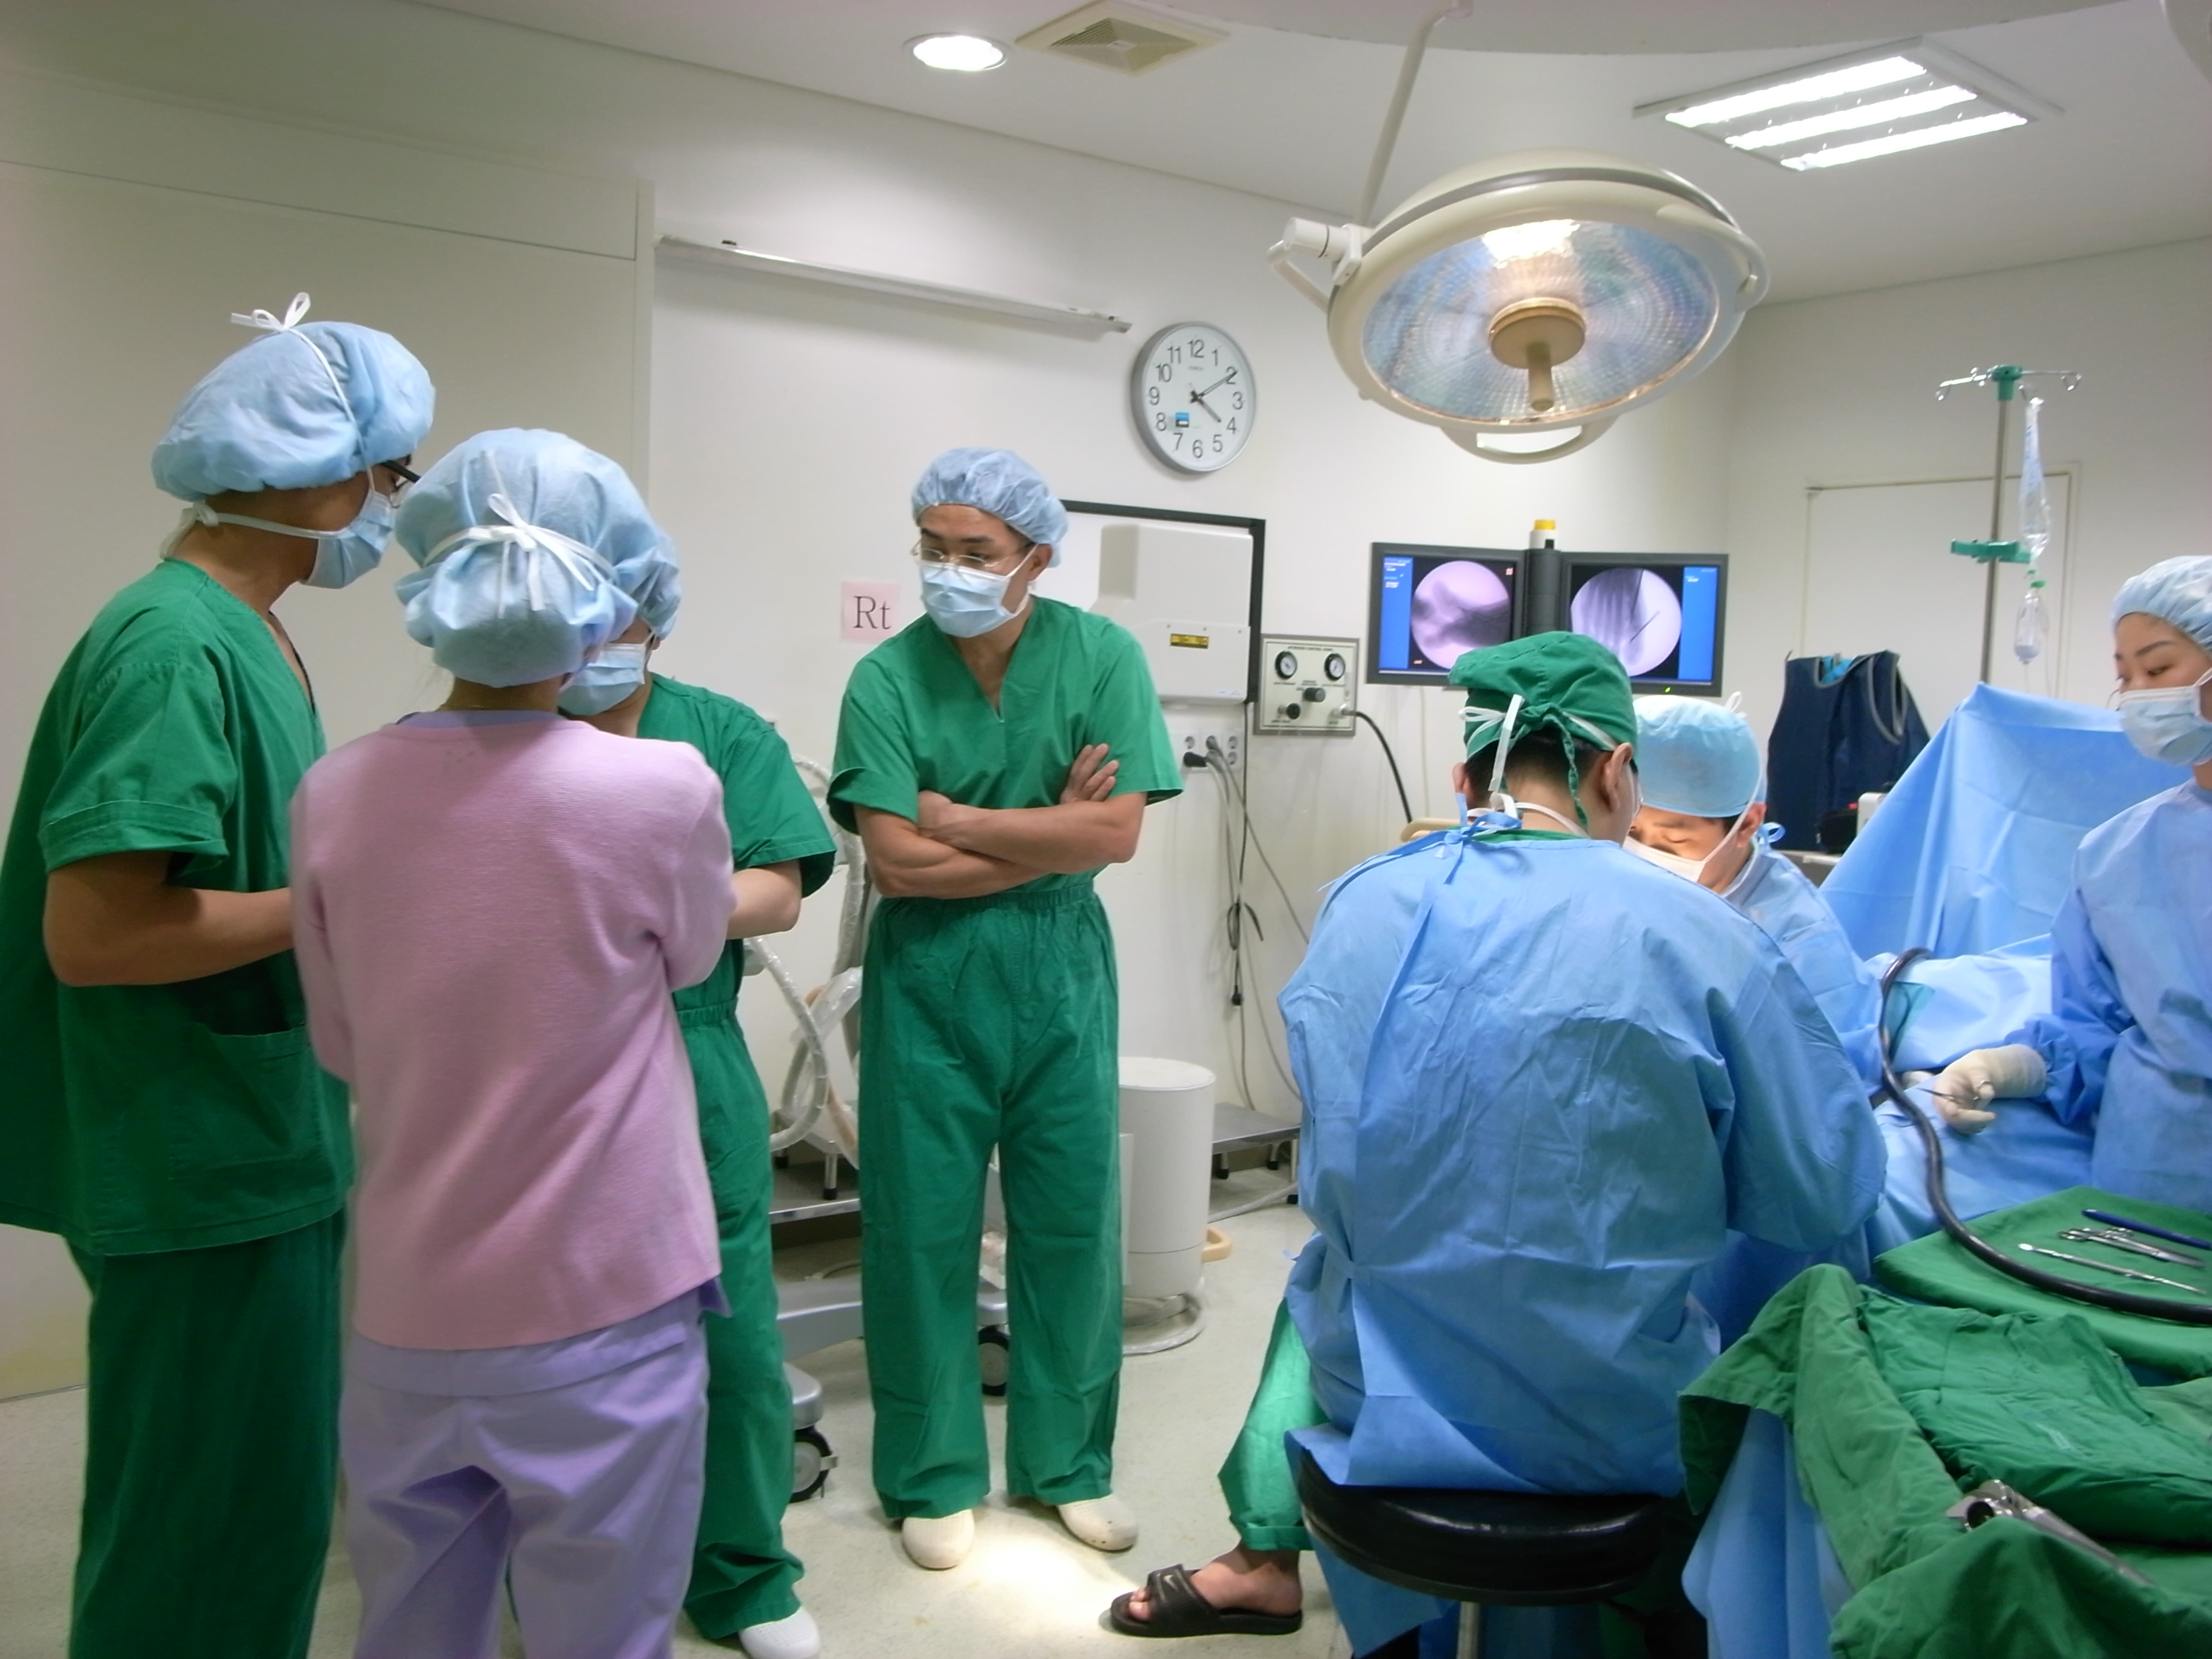 [2009년 12월] 일본 의료진 족부 수술 참관 게시글의 3번째 첨부파일입니다.